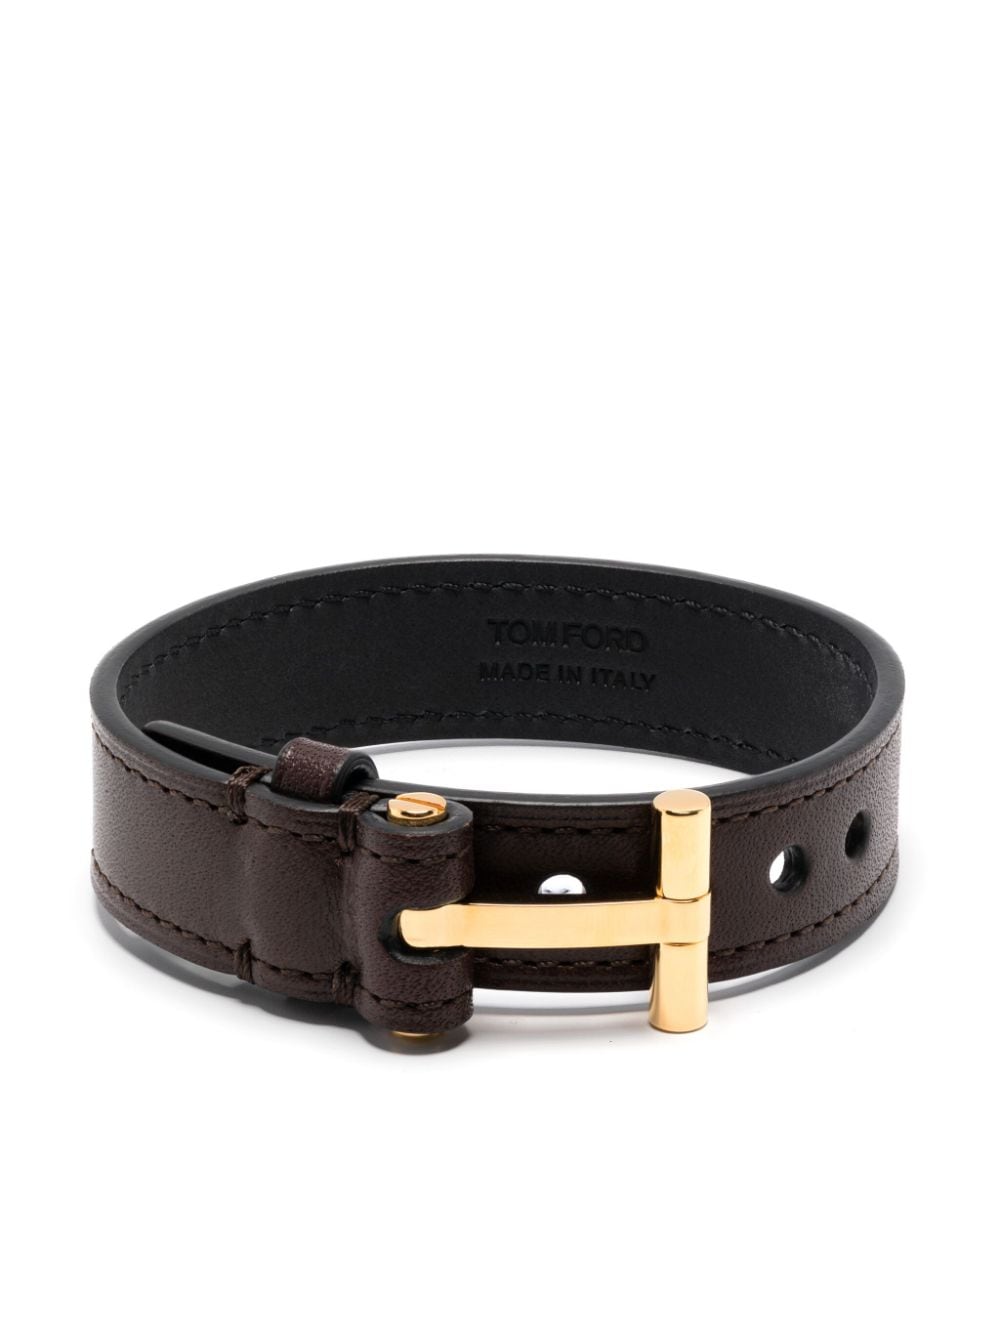 T-fastening leather bracelet